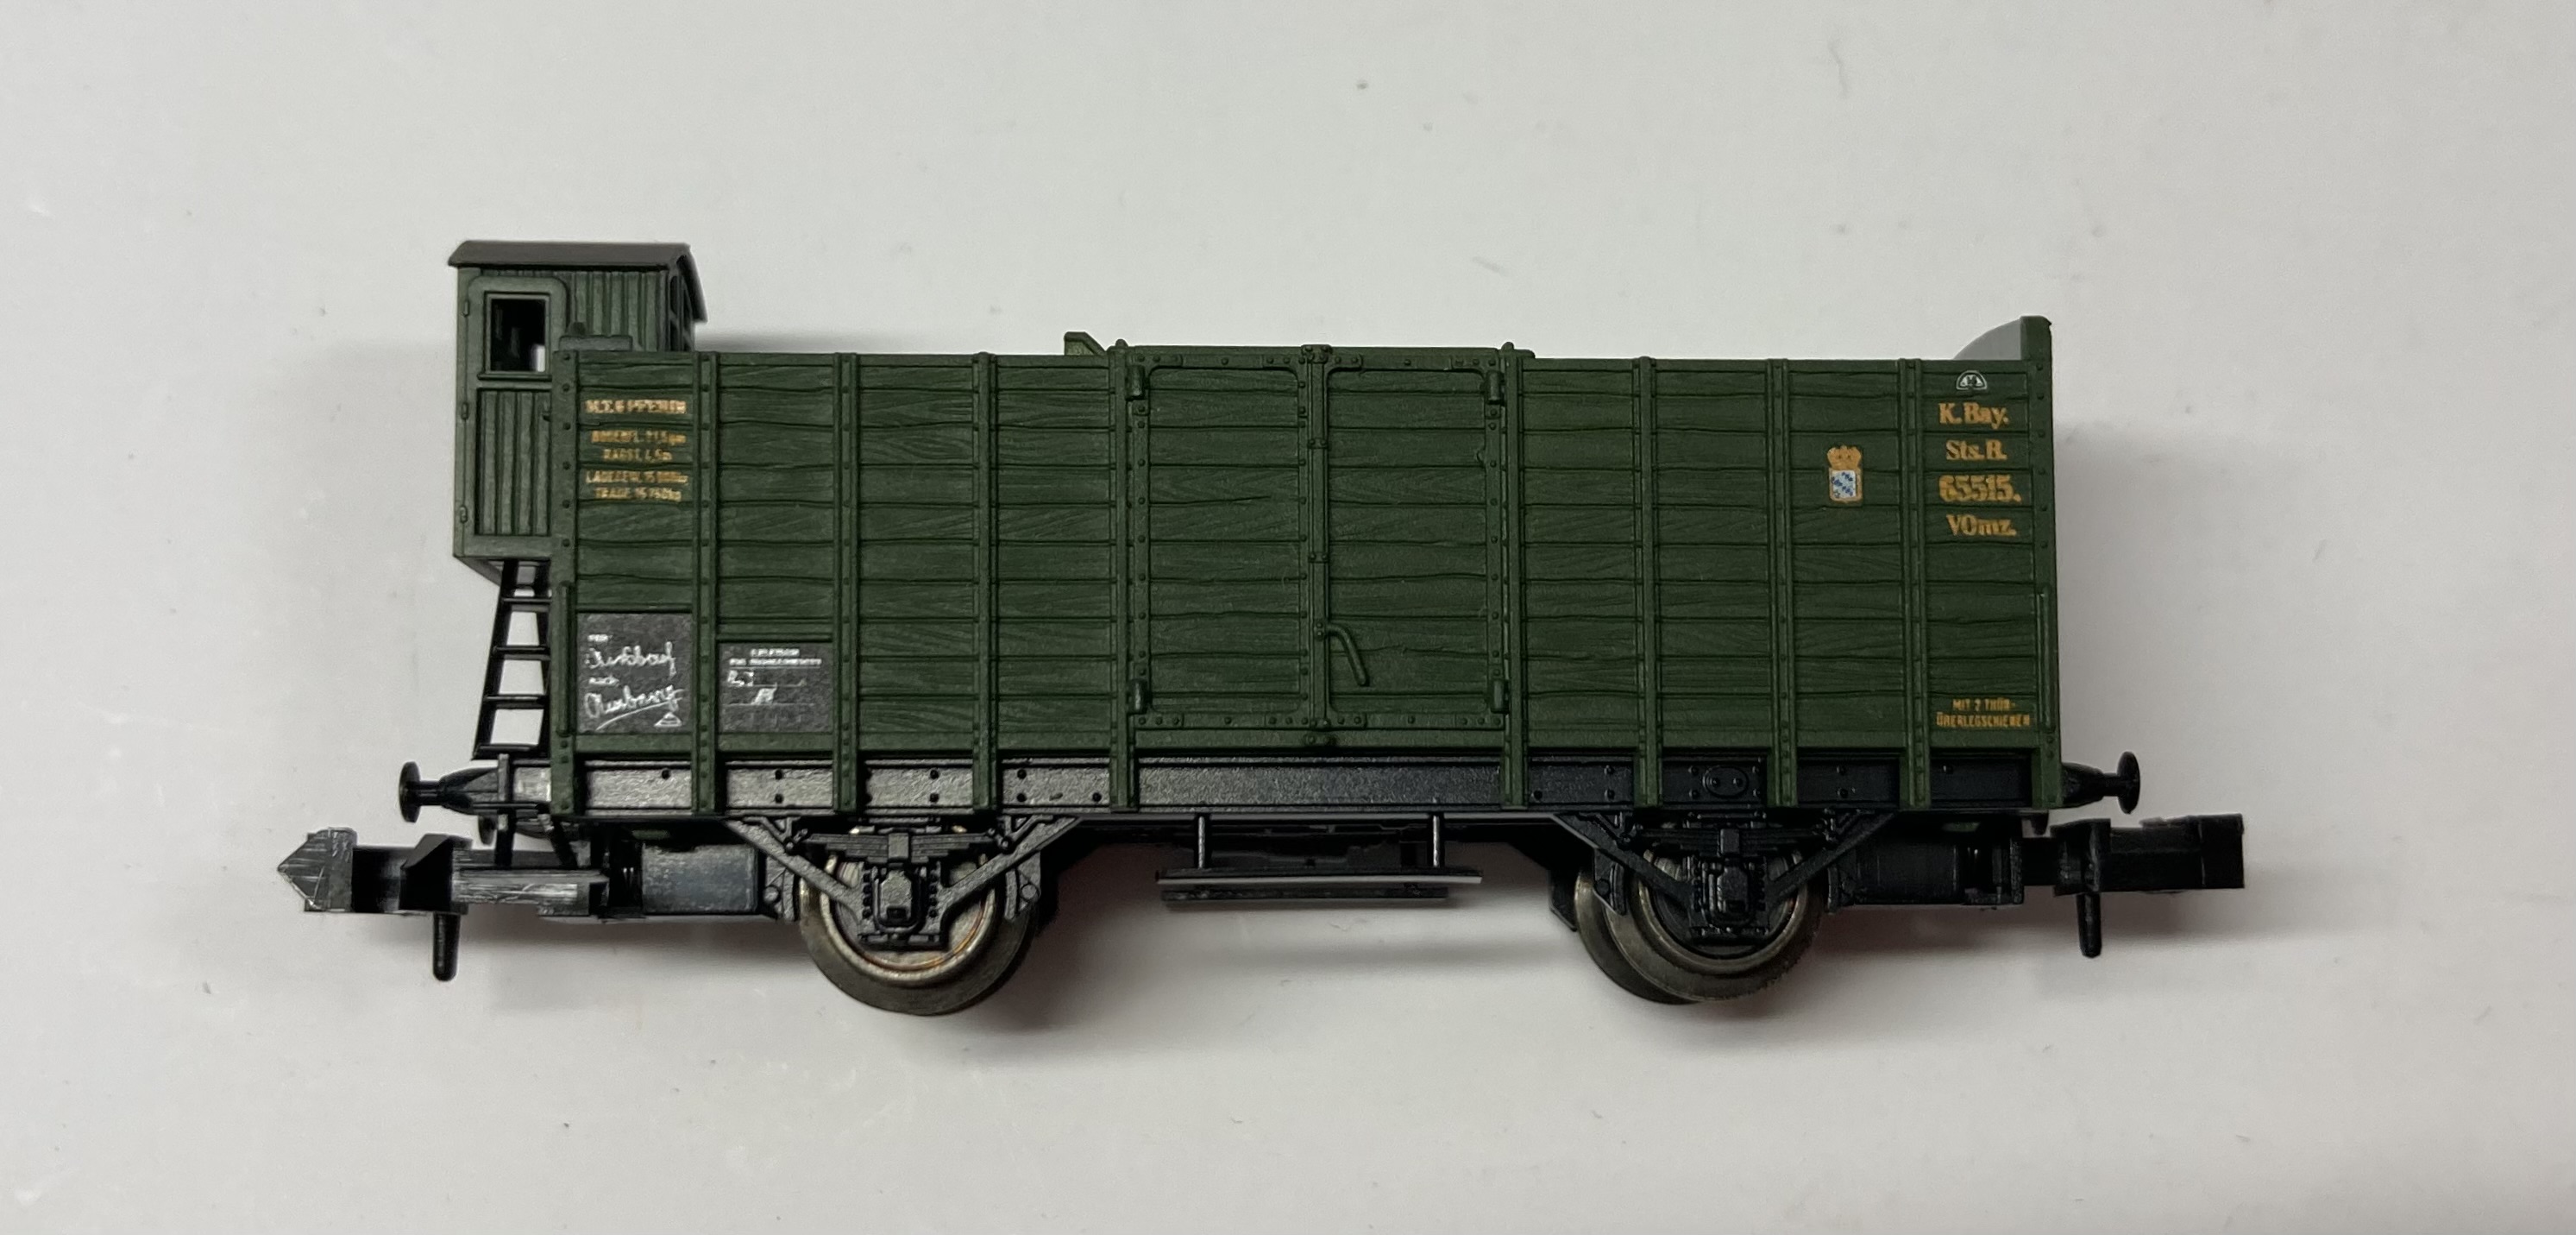 Minitrix Spur N Offener Güterwagen (Viehtransportwagen) mit Brhs, Gattung VOmz., 2-achsig, grün